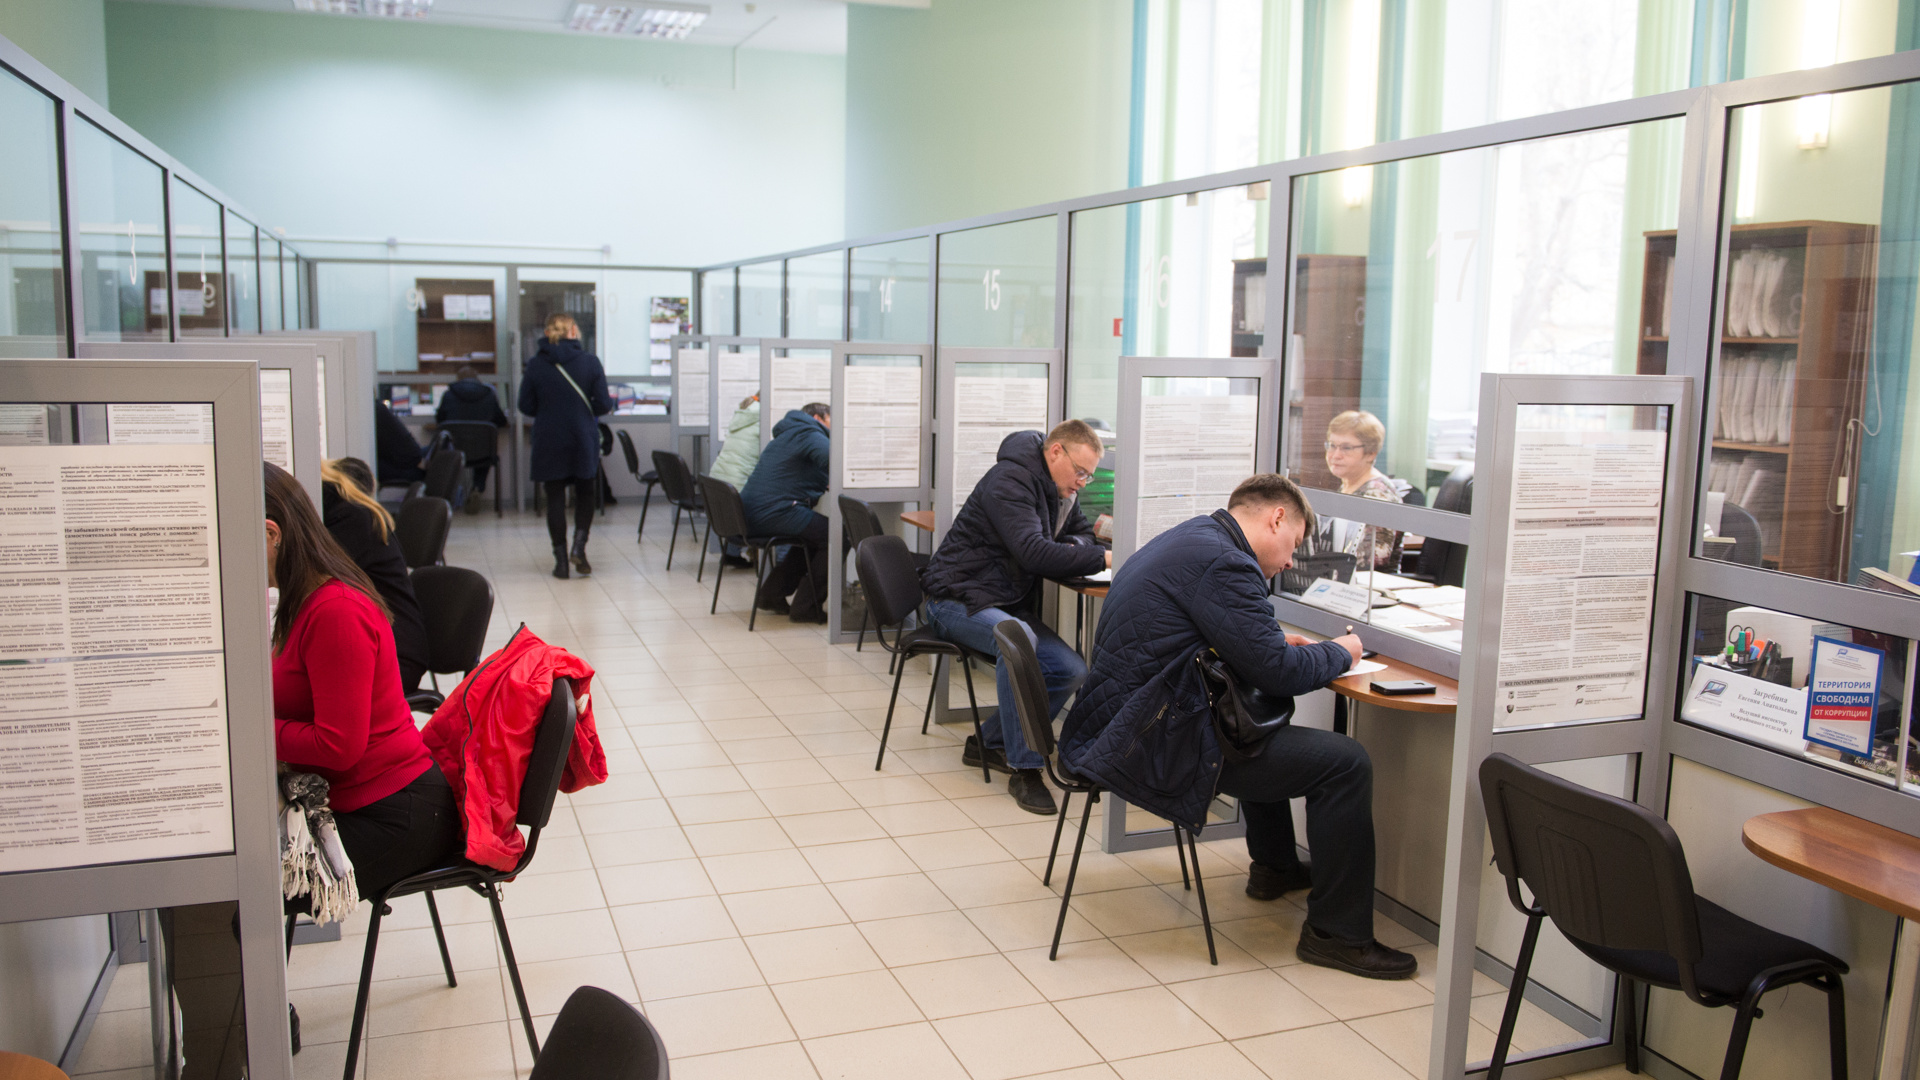 Безработица в России на рекордно низком уровне. Власти говорят, что это хорошо. А на самом деле?